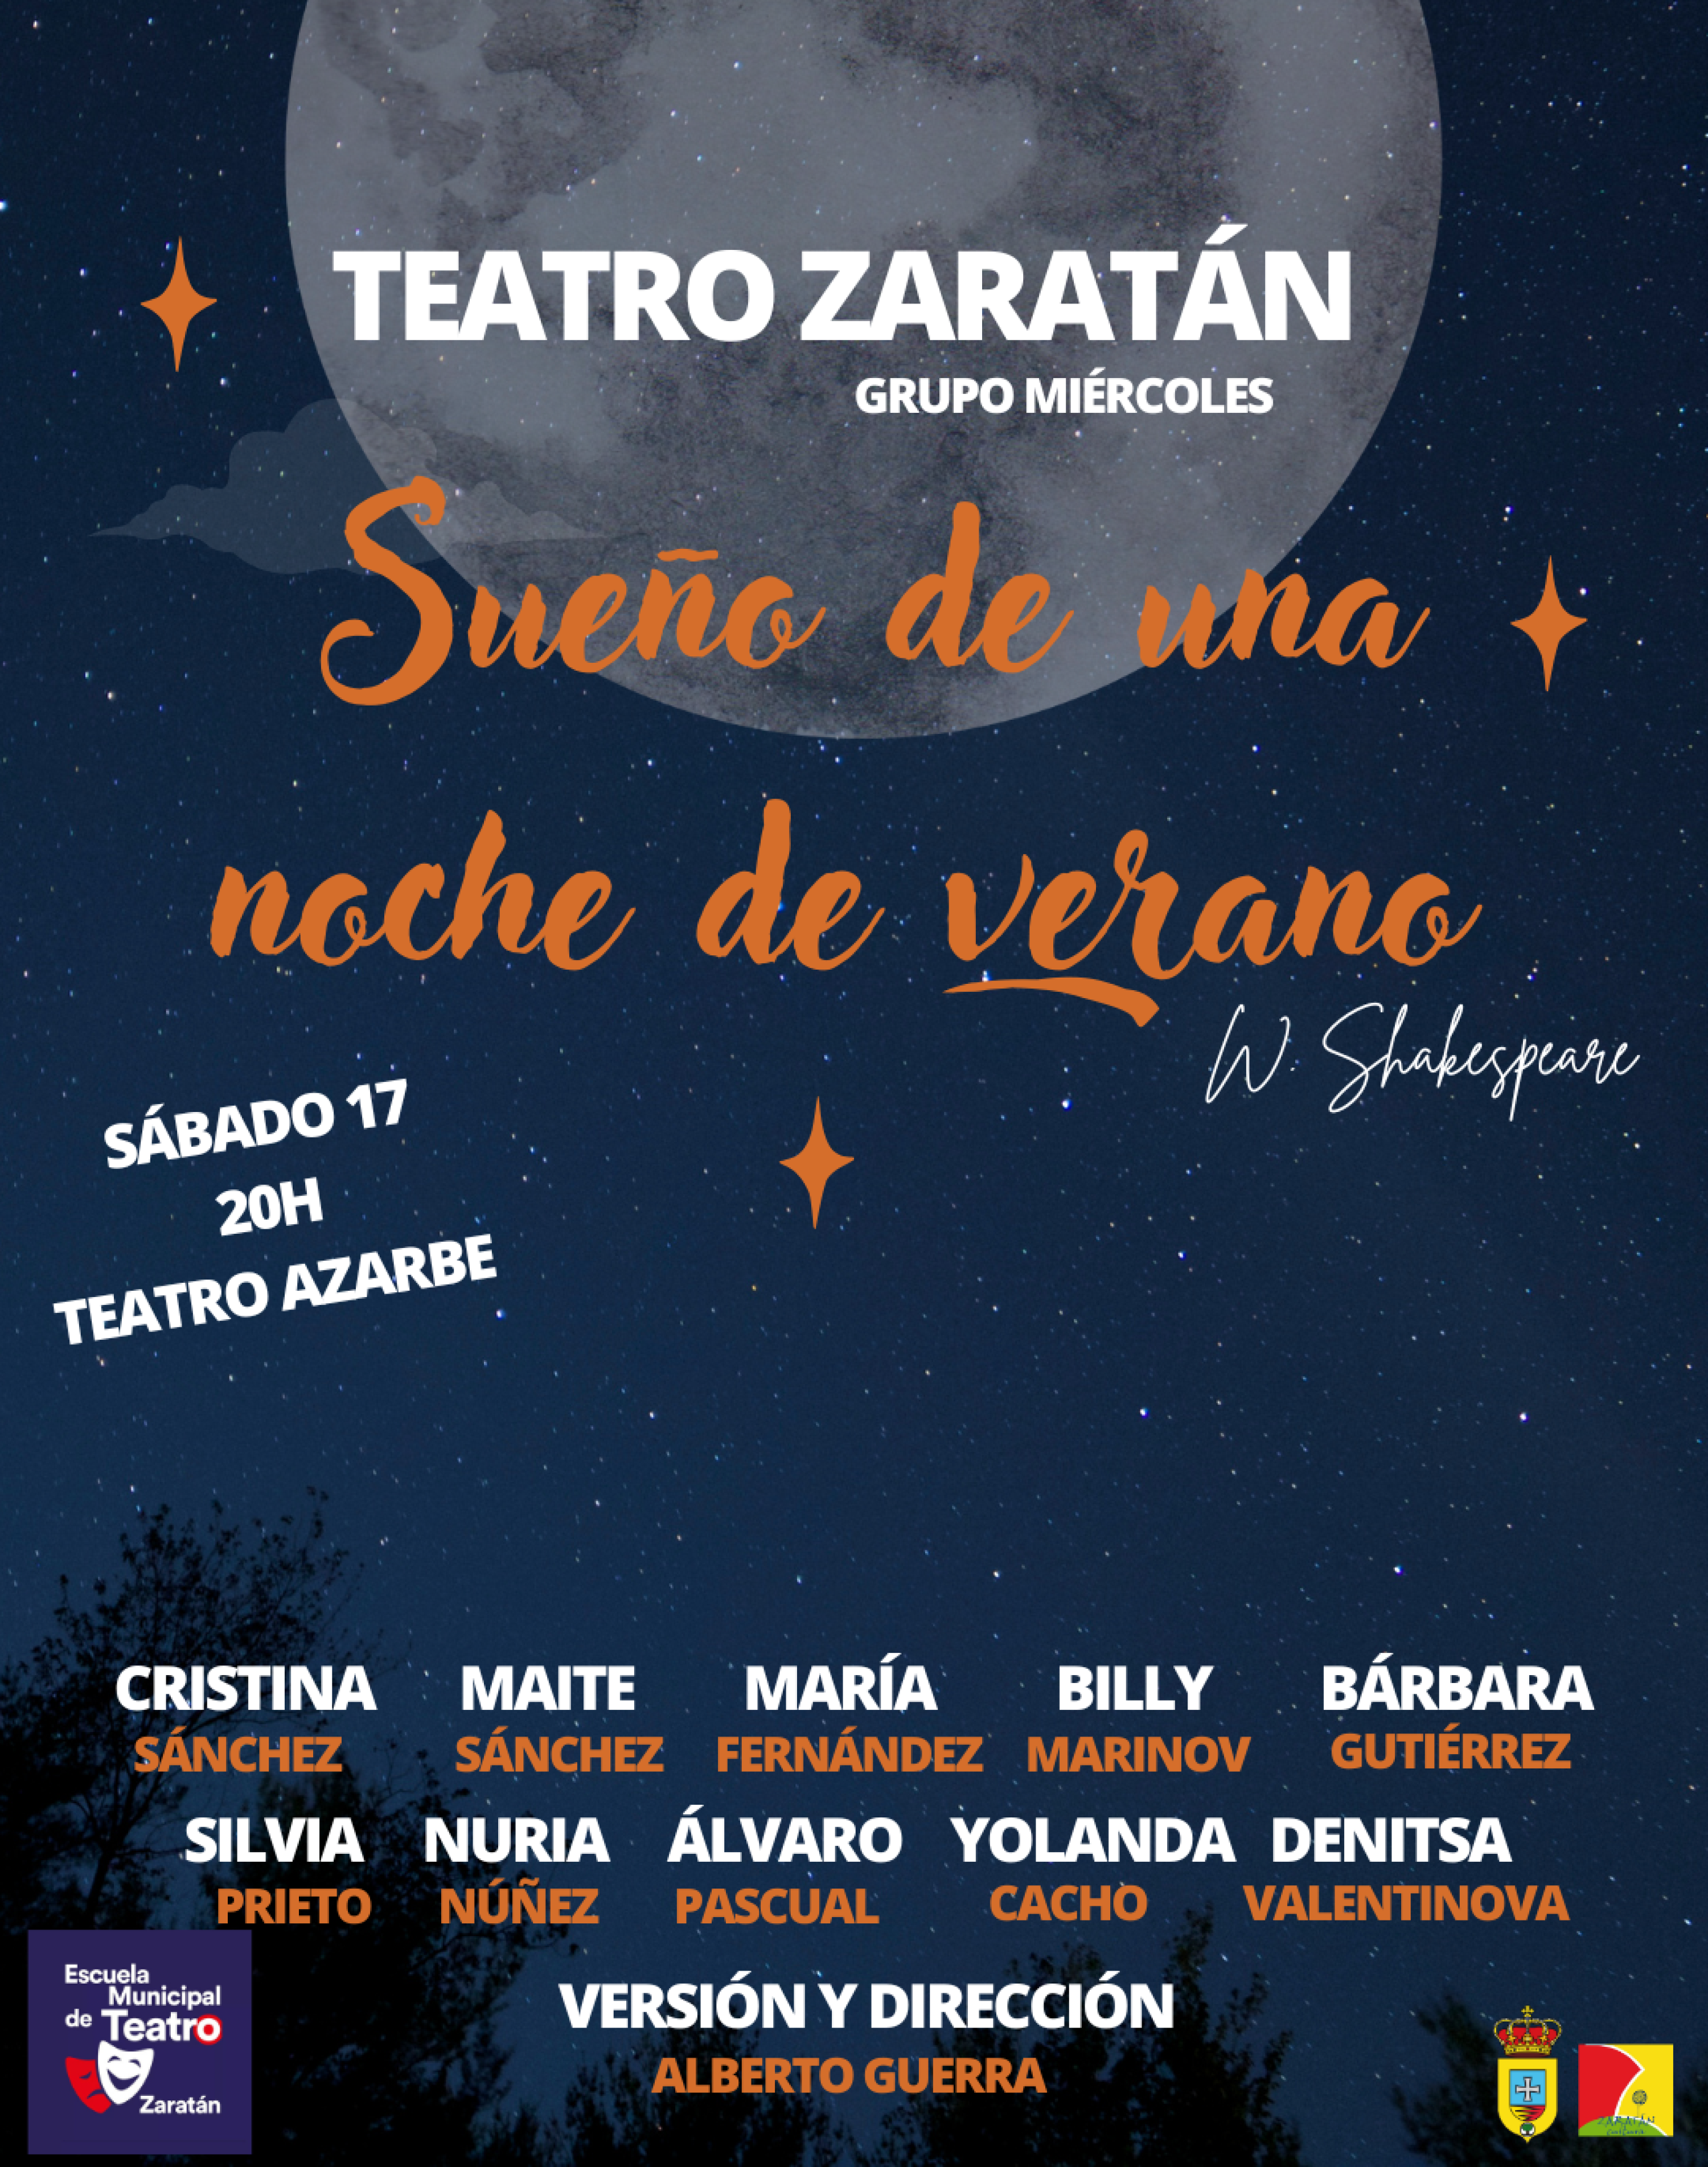 Teatro Zaratán GRUPO MIÉRCOLES 